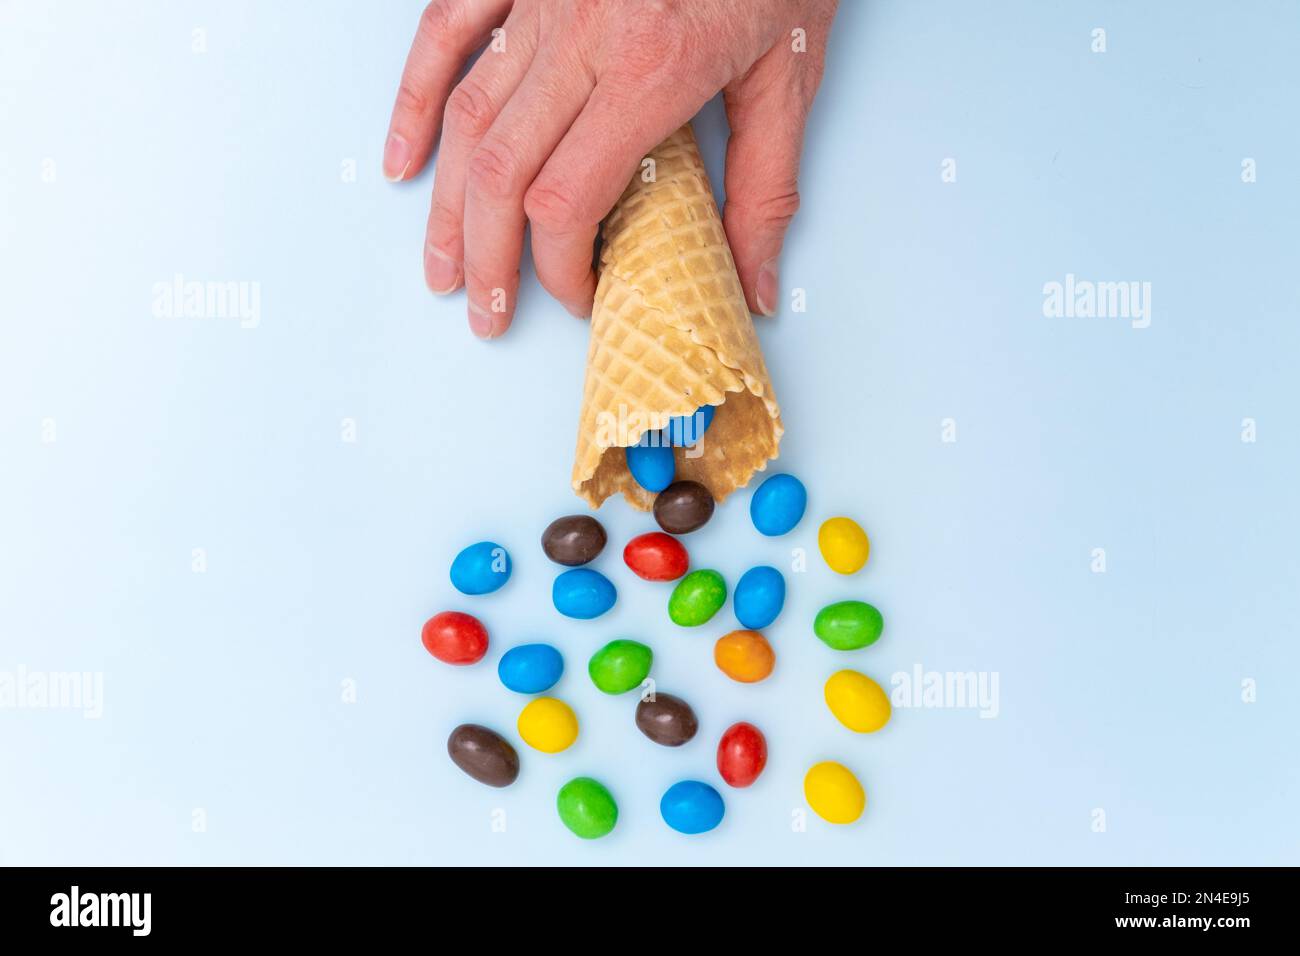 Une main tenant un cône de gaufre vide avec des bonbons ronds multicolores dispersés, des dragées. Des vacances amusantes. Bonbons pour enfants. Banque D'Images